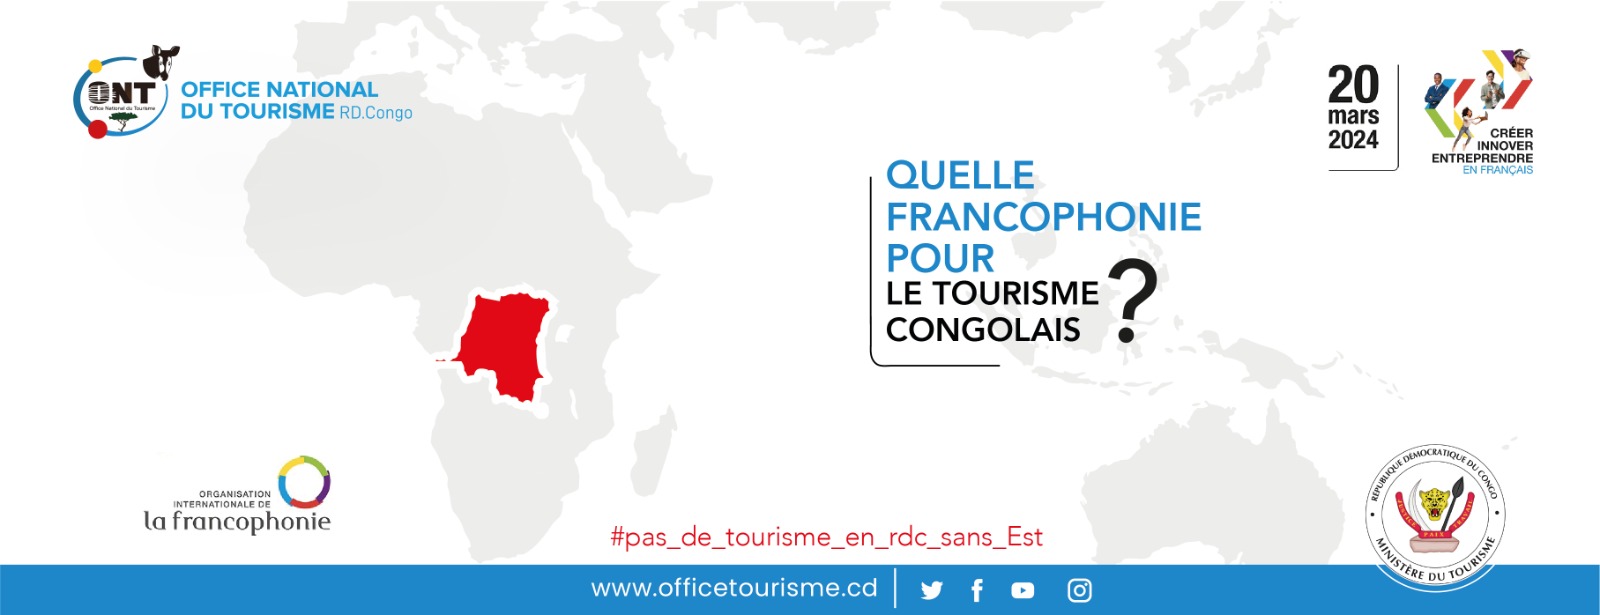 La RDC n'organisera pas de cérémonie officielle pour célébrer la journée internationale de la Francophonie ce 20 mars 2024.